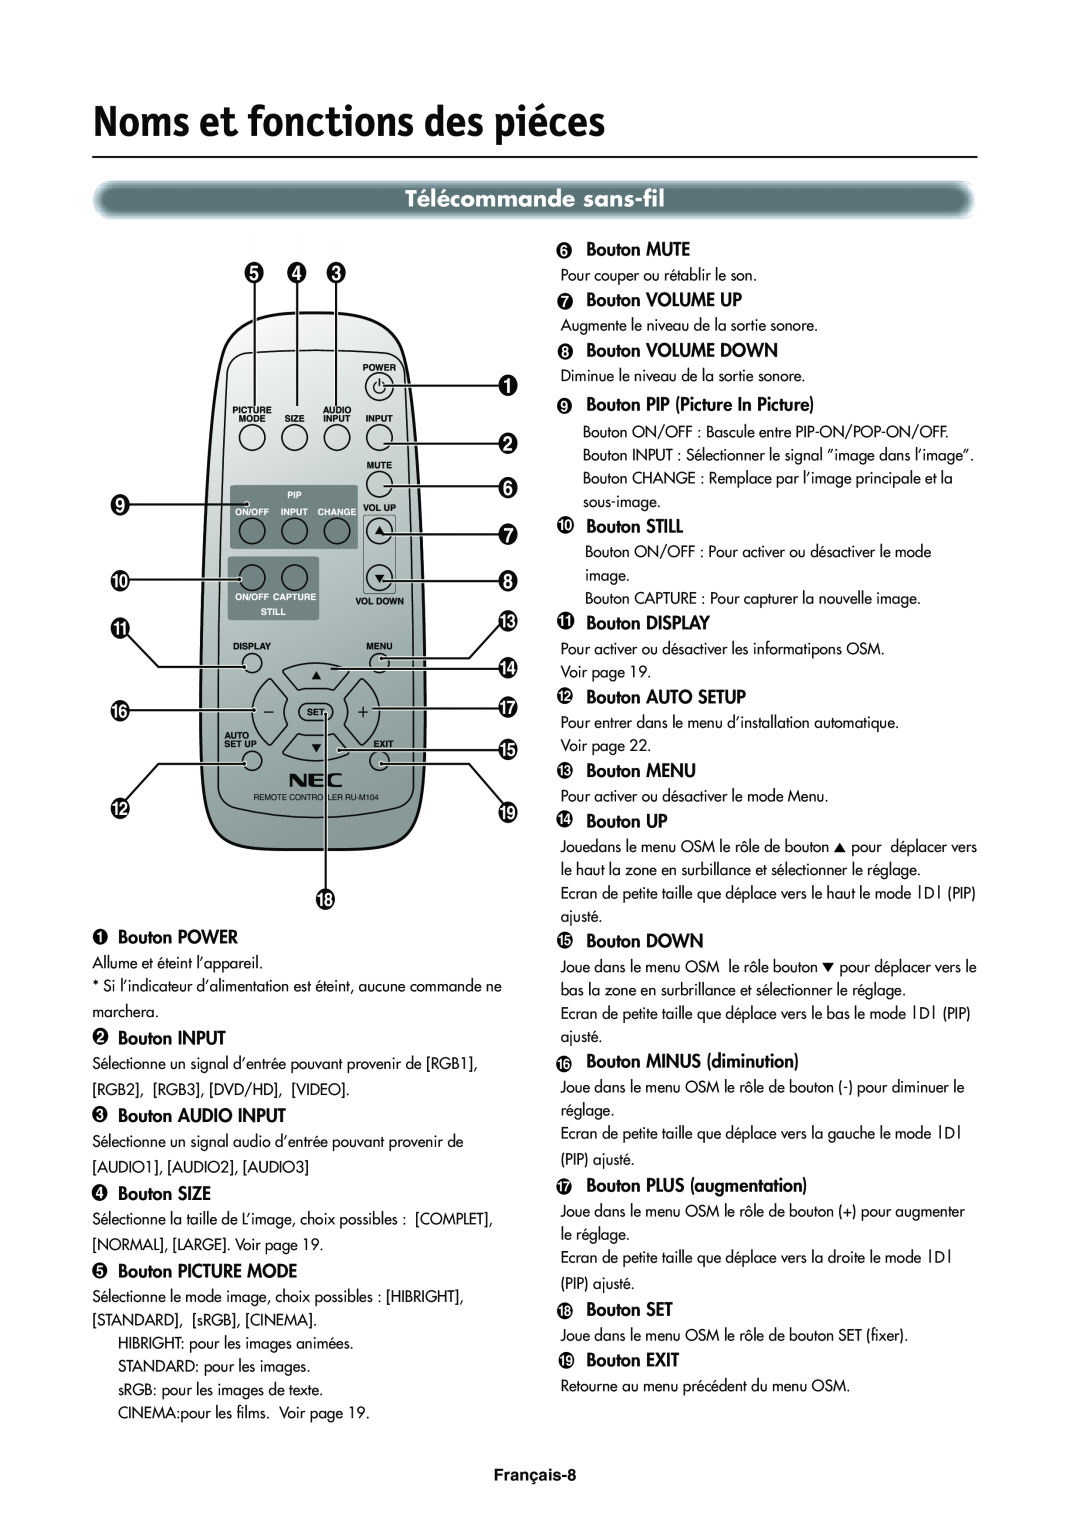 NEC LCD4000e manual Télécommande sans-fil, Noms et fonctions des piéces 